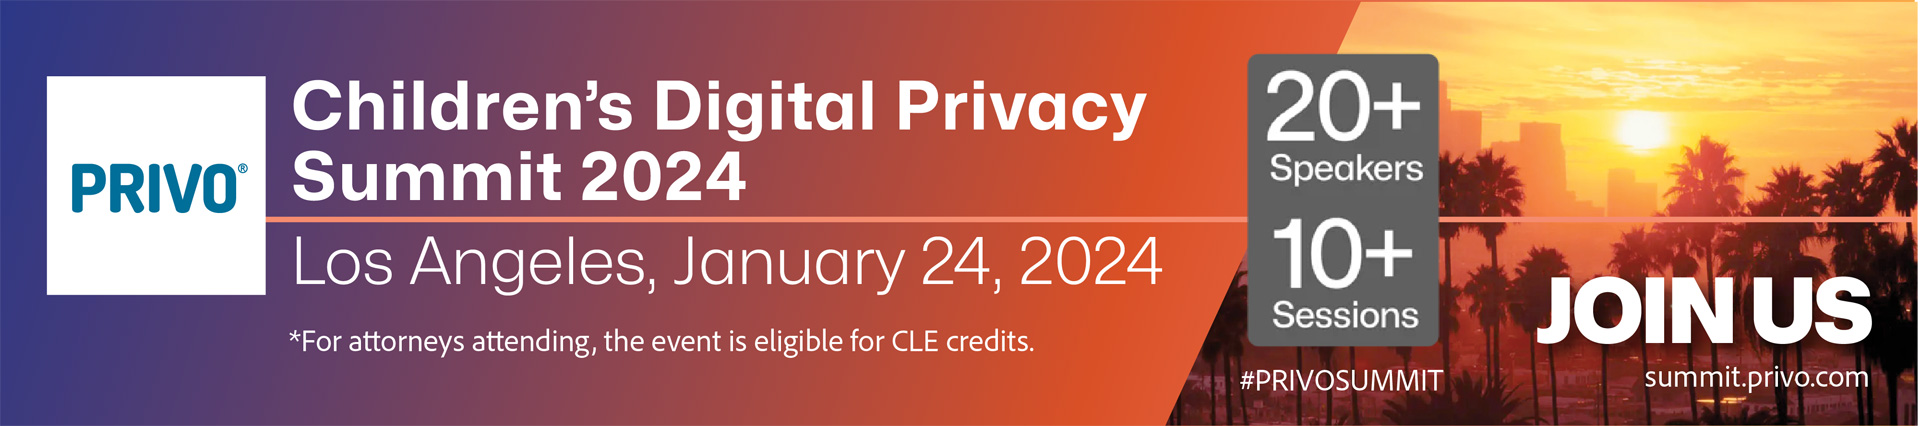 Children's digital privacy summit 2024